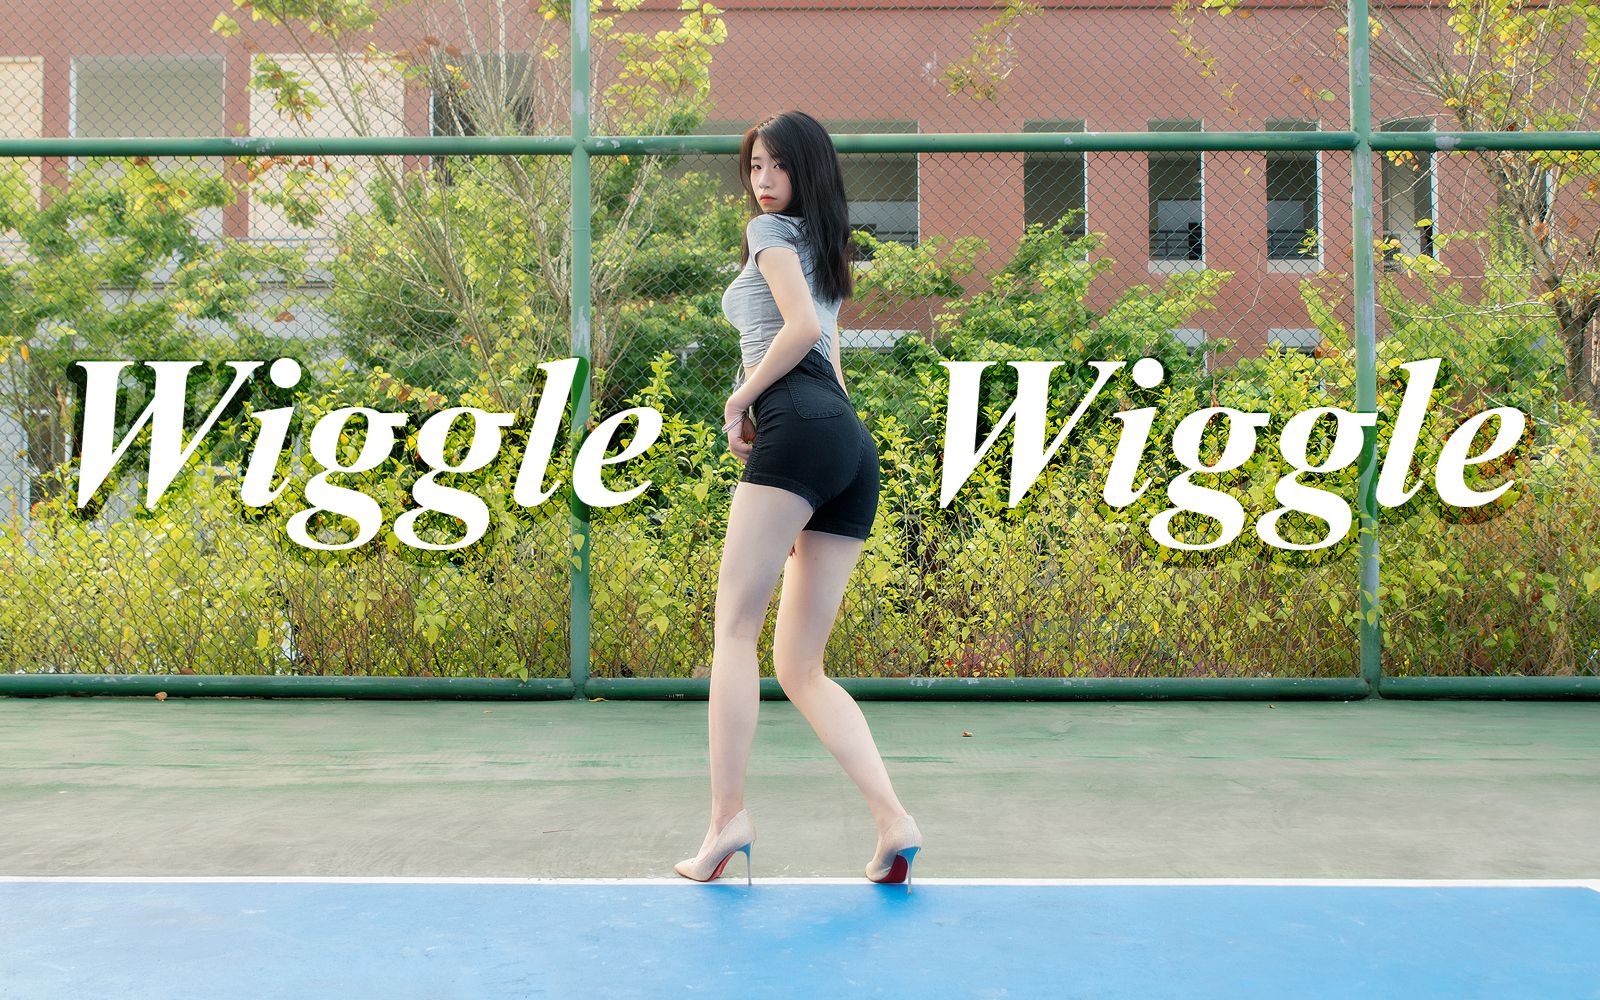 【子怡】wiggle wiggle❤ 高跟性感回归